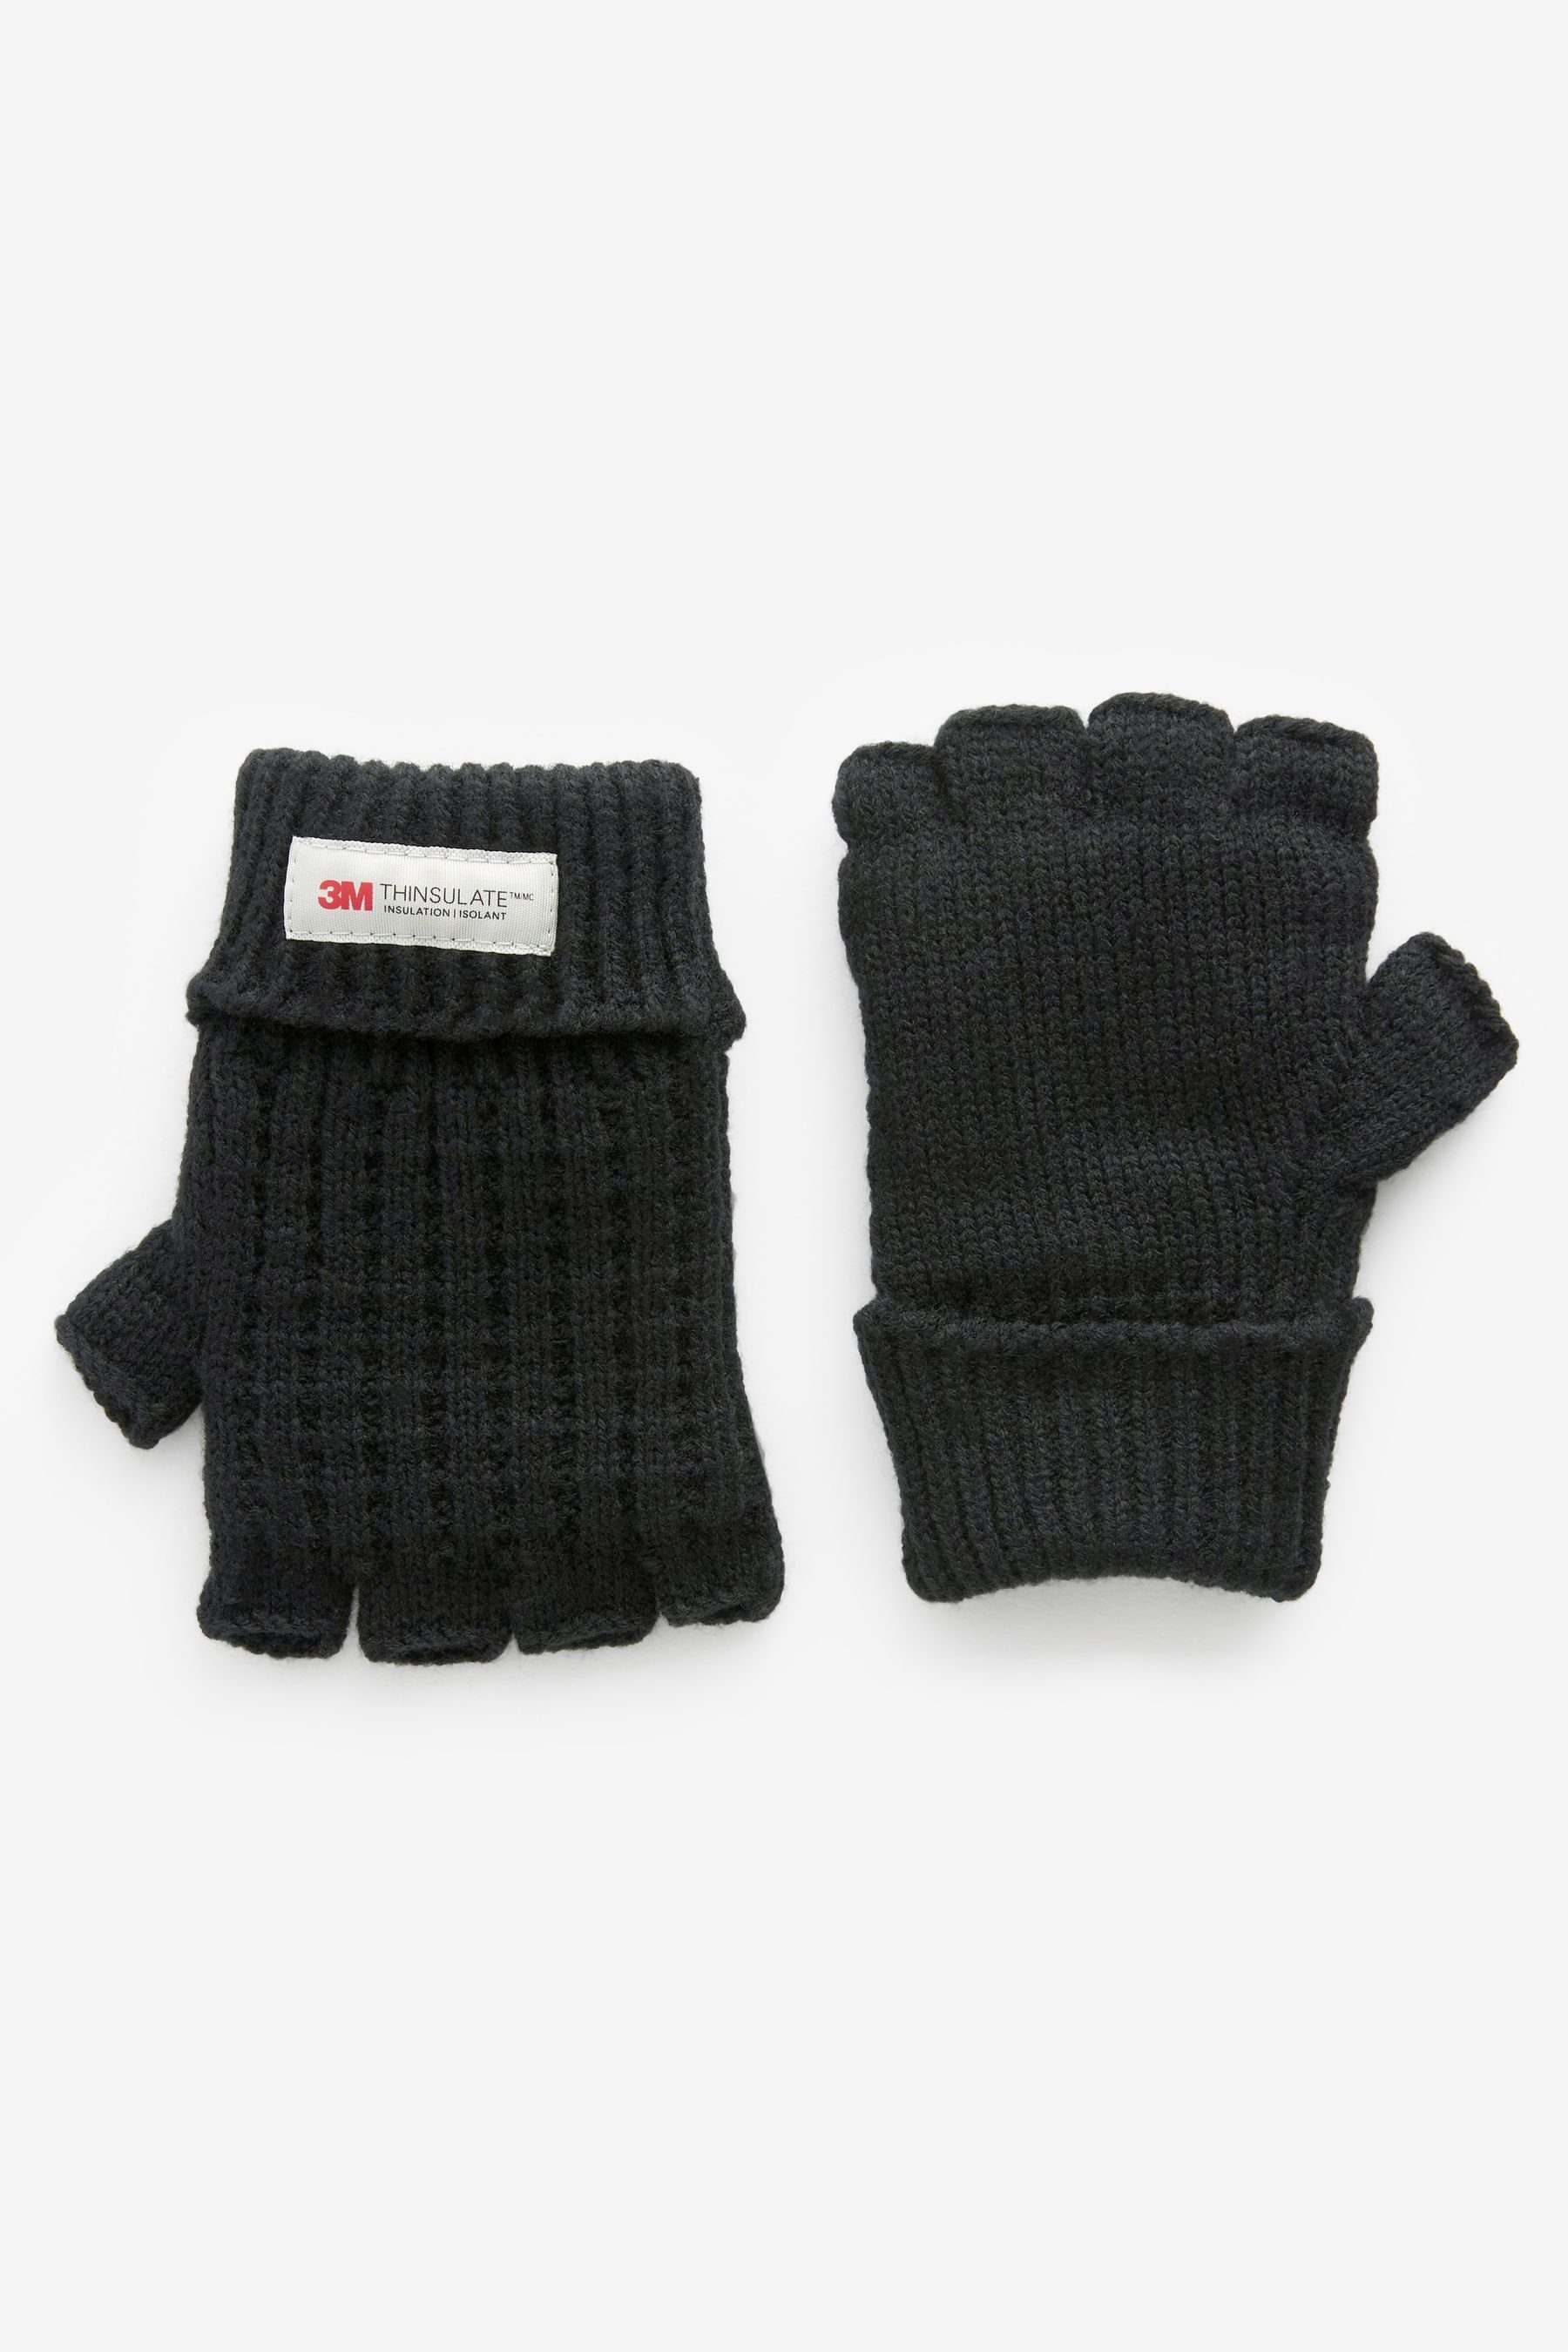 Next Strickhandschuhe Fingerlose Handschuhe